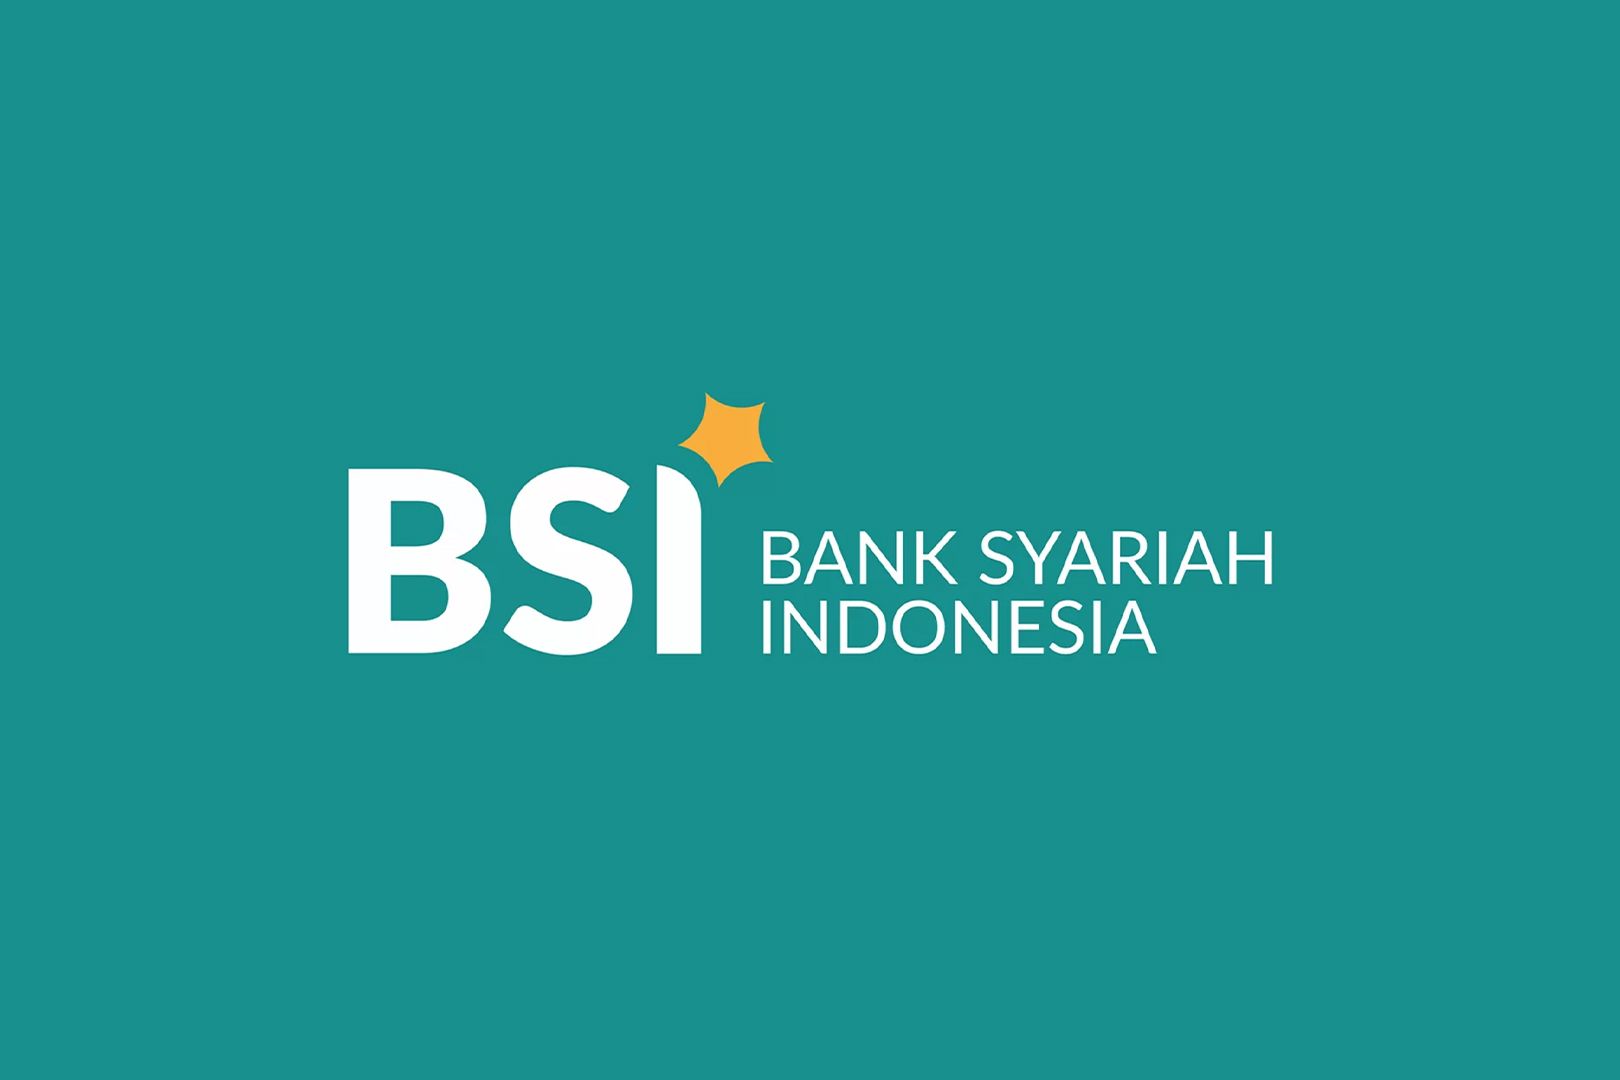 Pinjam Kredit di Bank BSI, Utang Sudah Lunas, Eh Sertifikat Nasabah Hilang, Kok Bisa?